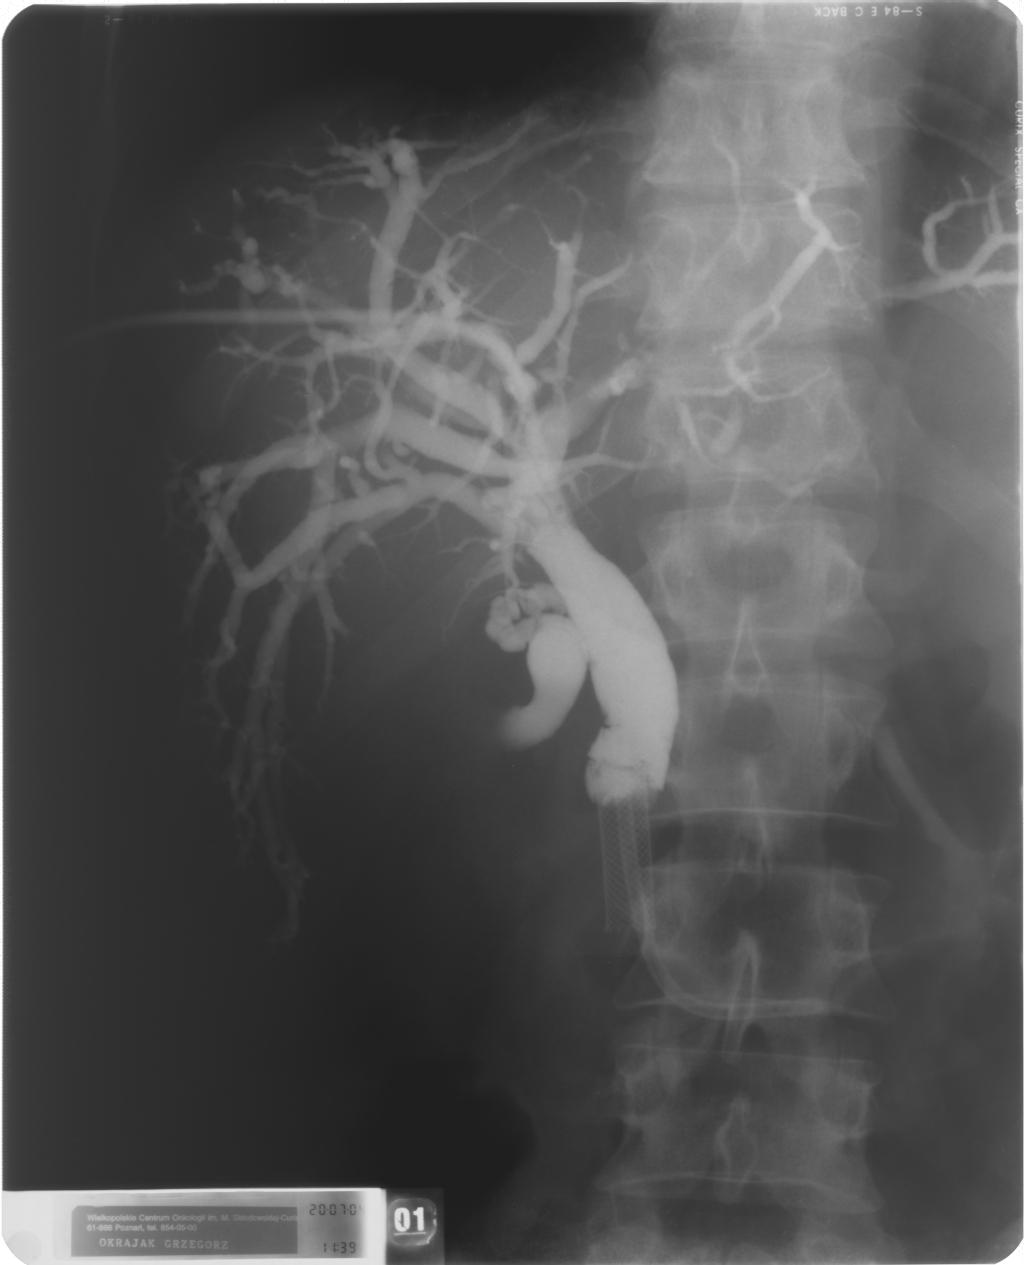 Cholangiografia - widok dróg żółciowych przed implantacją aplikatora do brachyterapii (French 5), założono dren 10 F metodą rendez-vous, widoczny stent